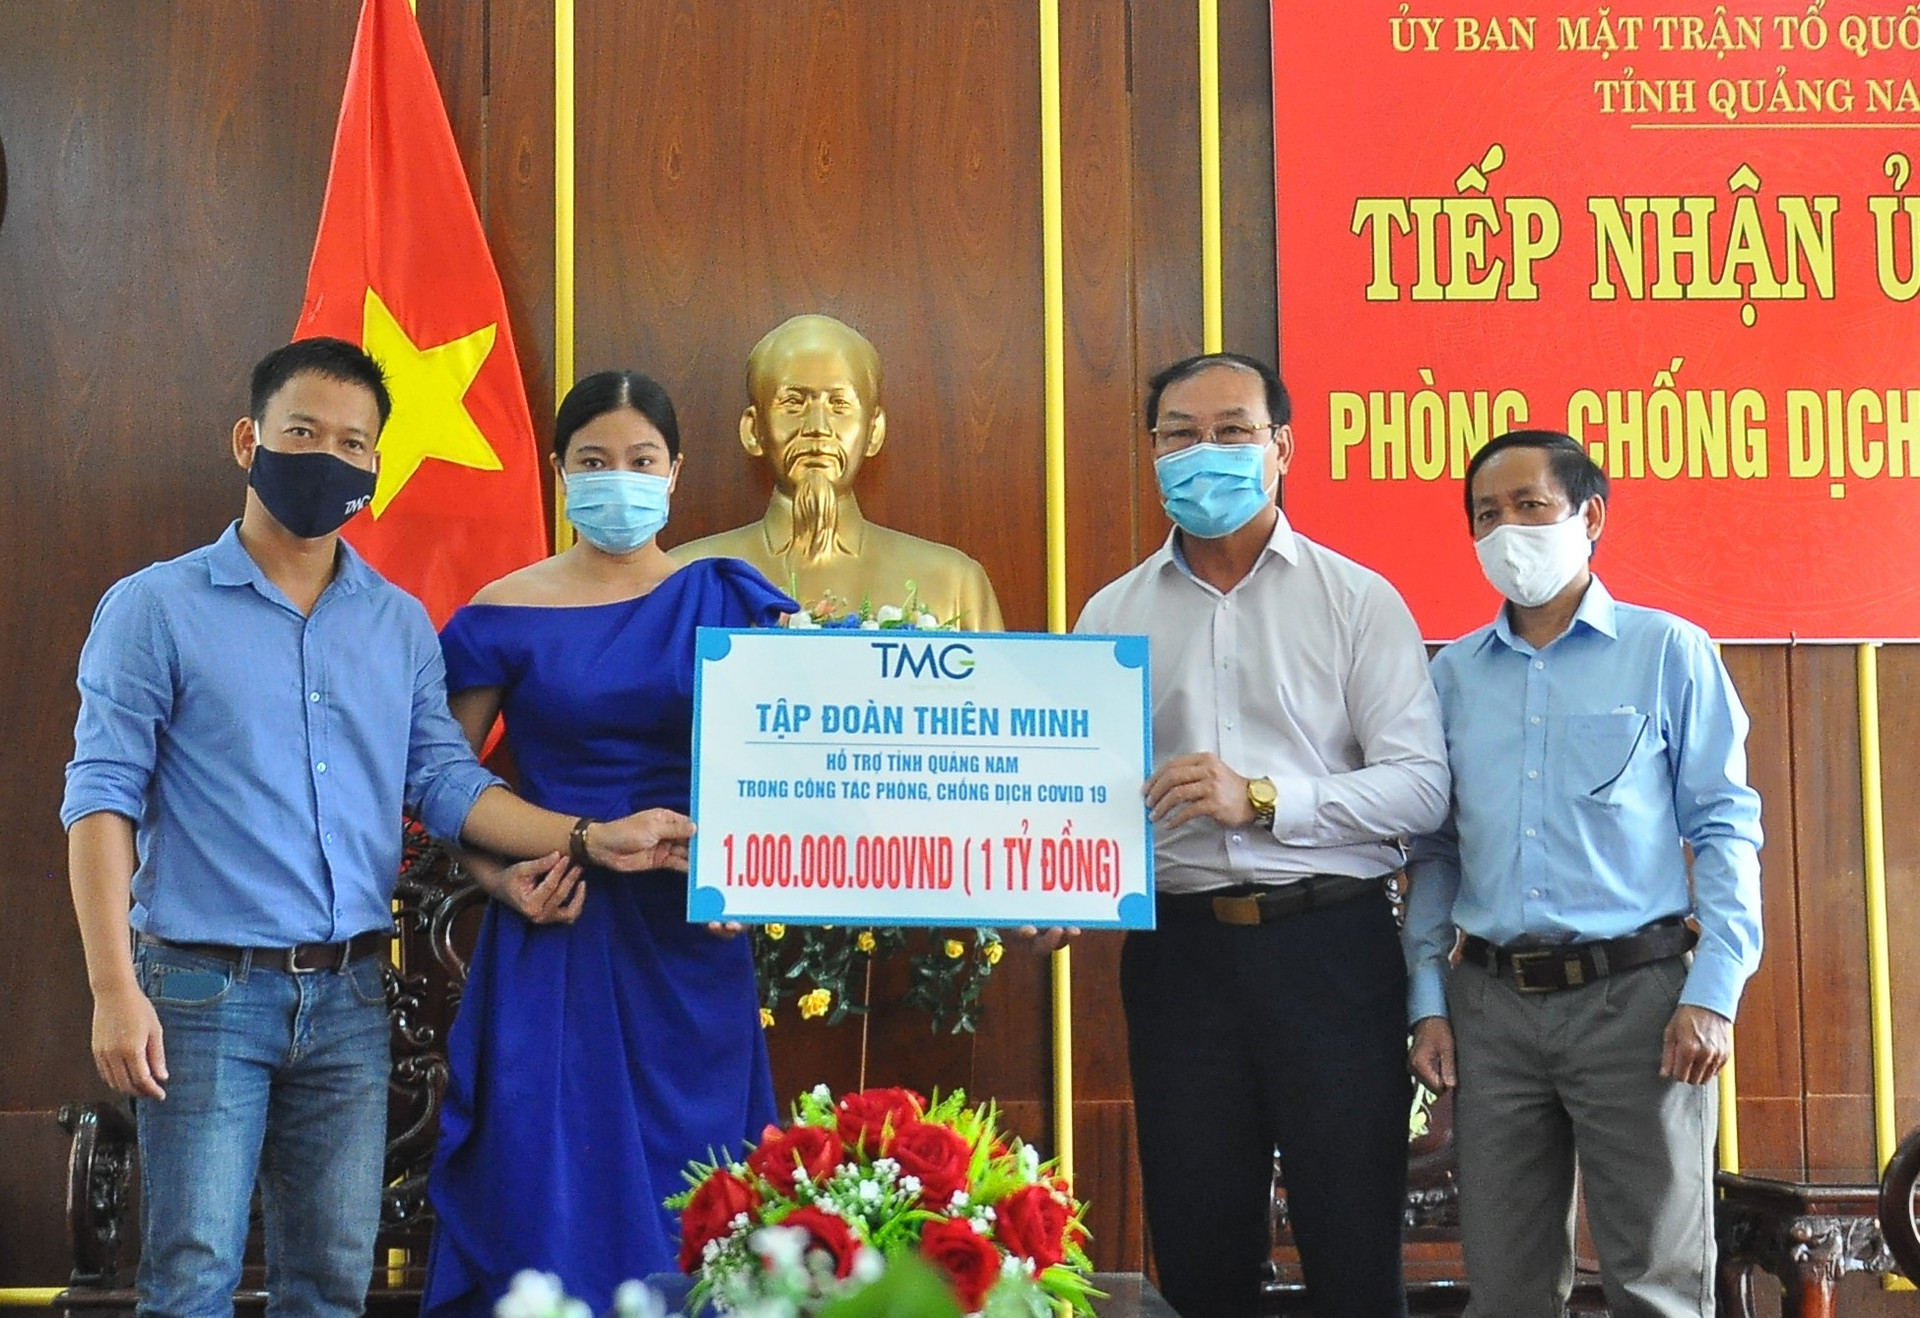 Ủy ban MTTQ Việt Nam với UBND tỉnh vừa ký quy chế phối hợp về việc quản lý, sử dụng nguồn ủng hộ công tác phòng chống dịch bệnh Covid-19. Ảnh: V.A